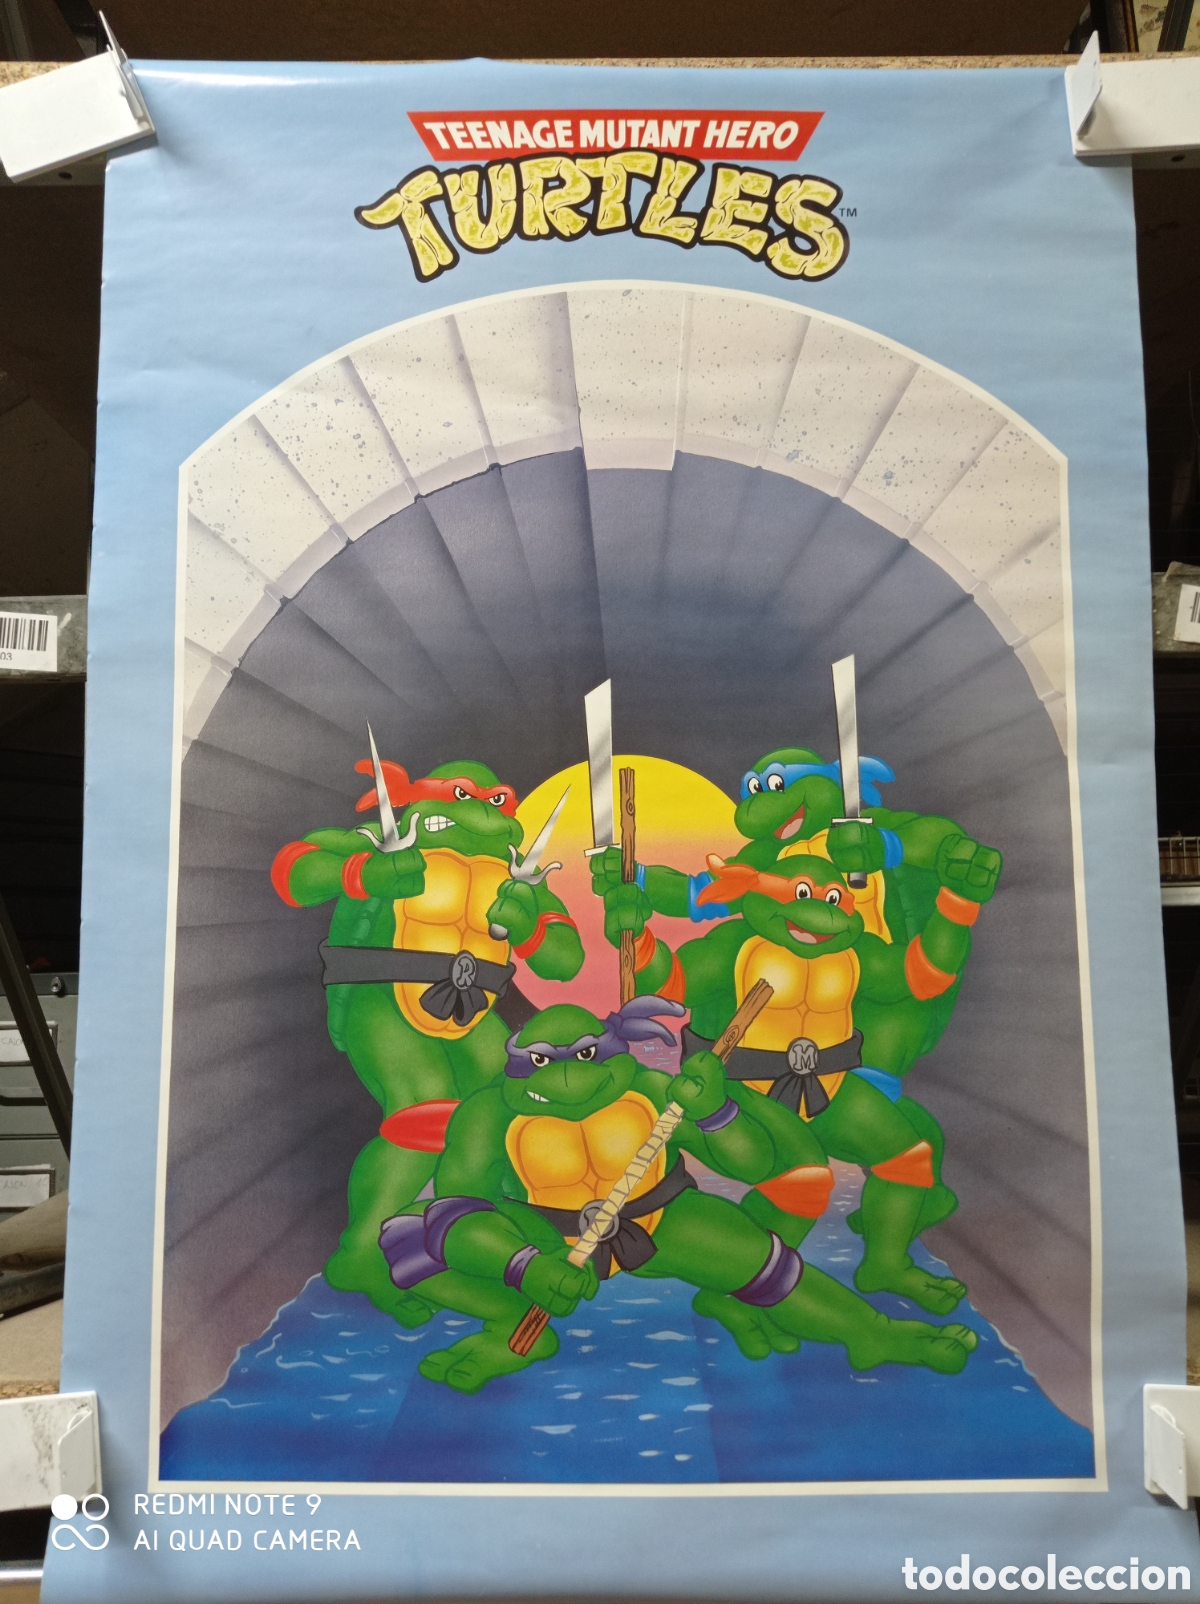 poster tortugas ninja 2, de los años 90, de sca - Buy Posters of children's  movies on todocoleccion